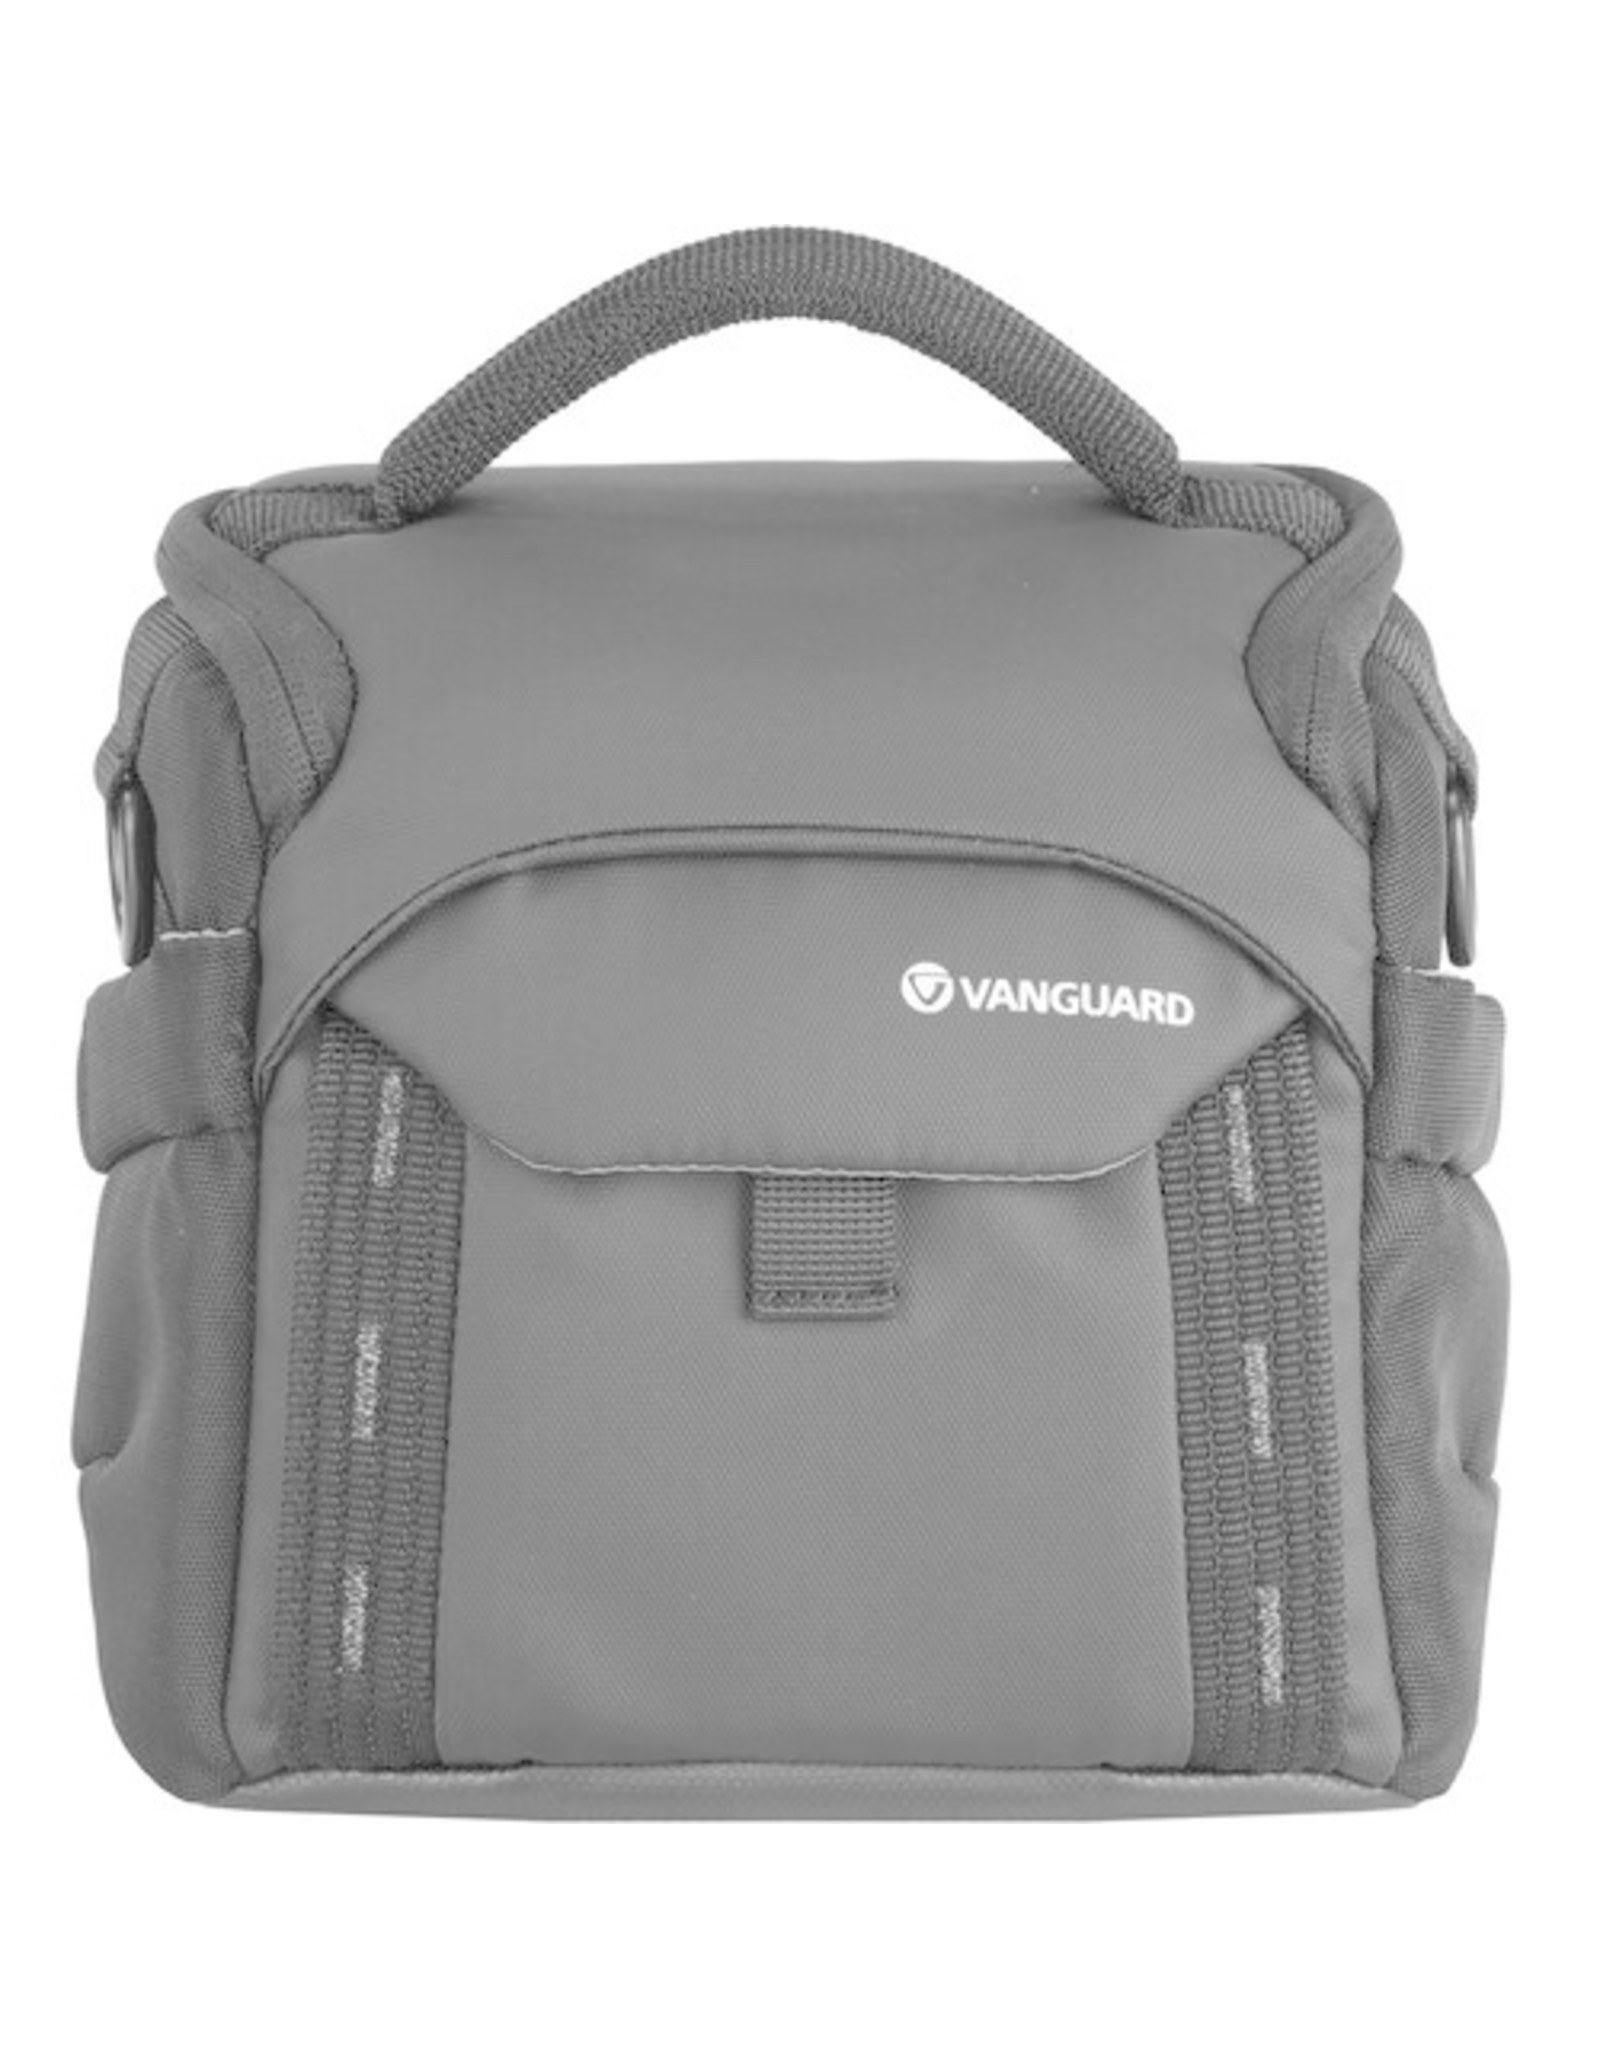 Vanguard Vanguard VEO Adaptor 15M Camera Shoulder Bag (CHOOSE COLOR)